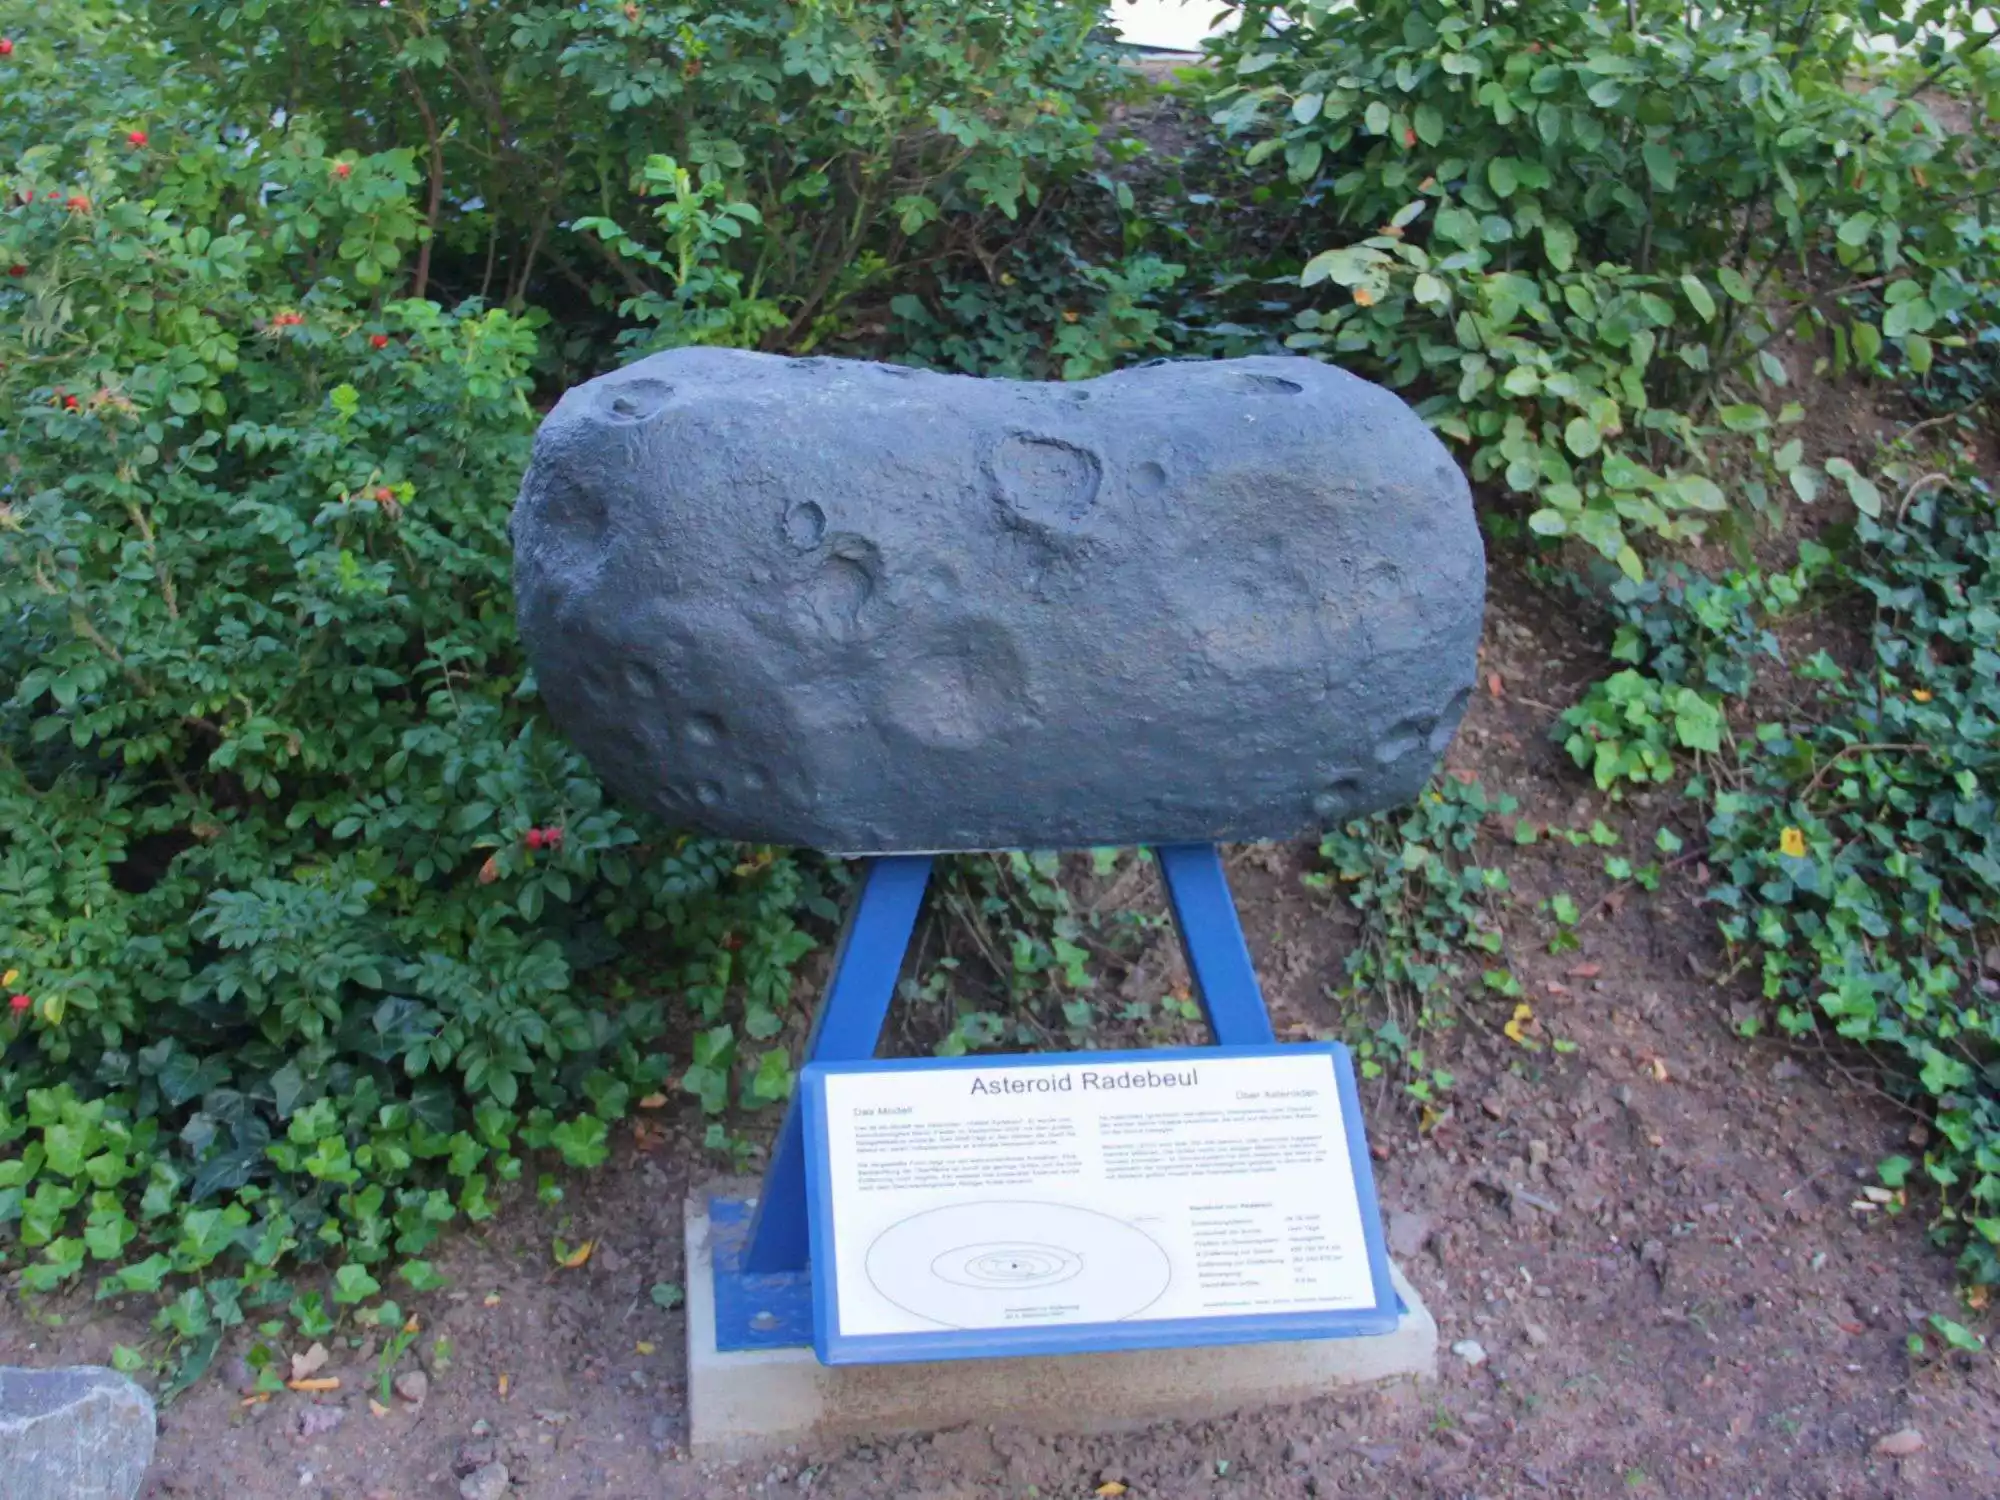 Modell des Asteroiden Radebeul auf dem Freigelände der Sternwarte Radebeul